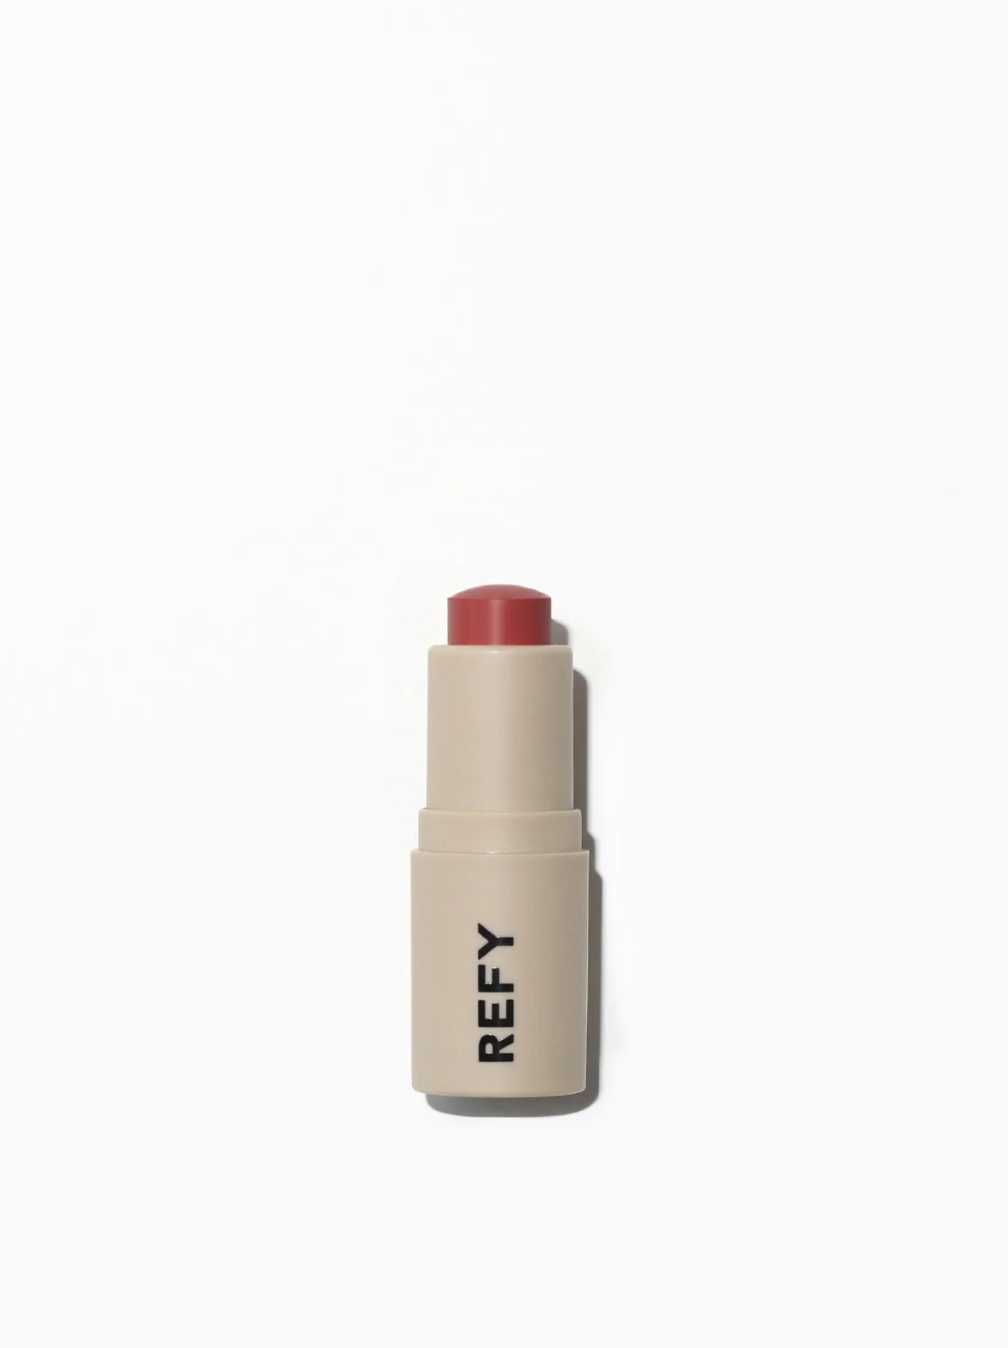 Продам набор для губ от популярного бренда Refy